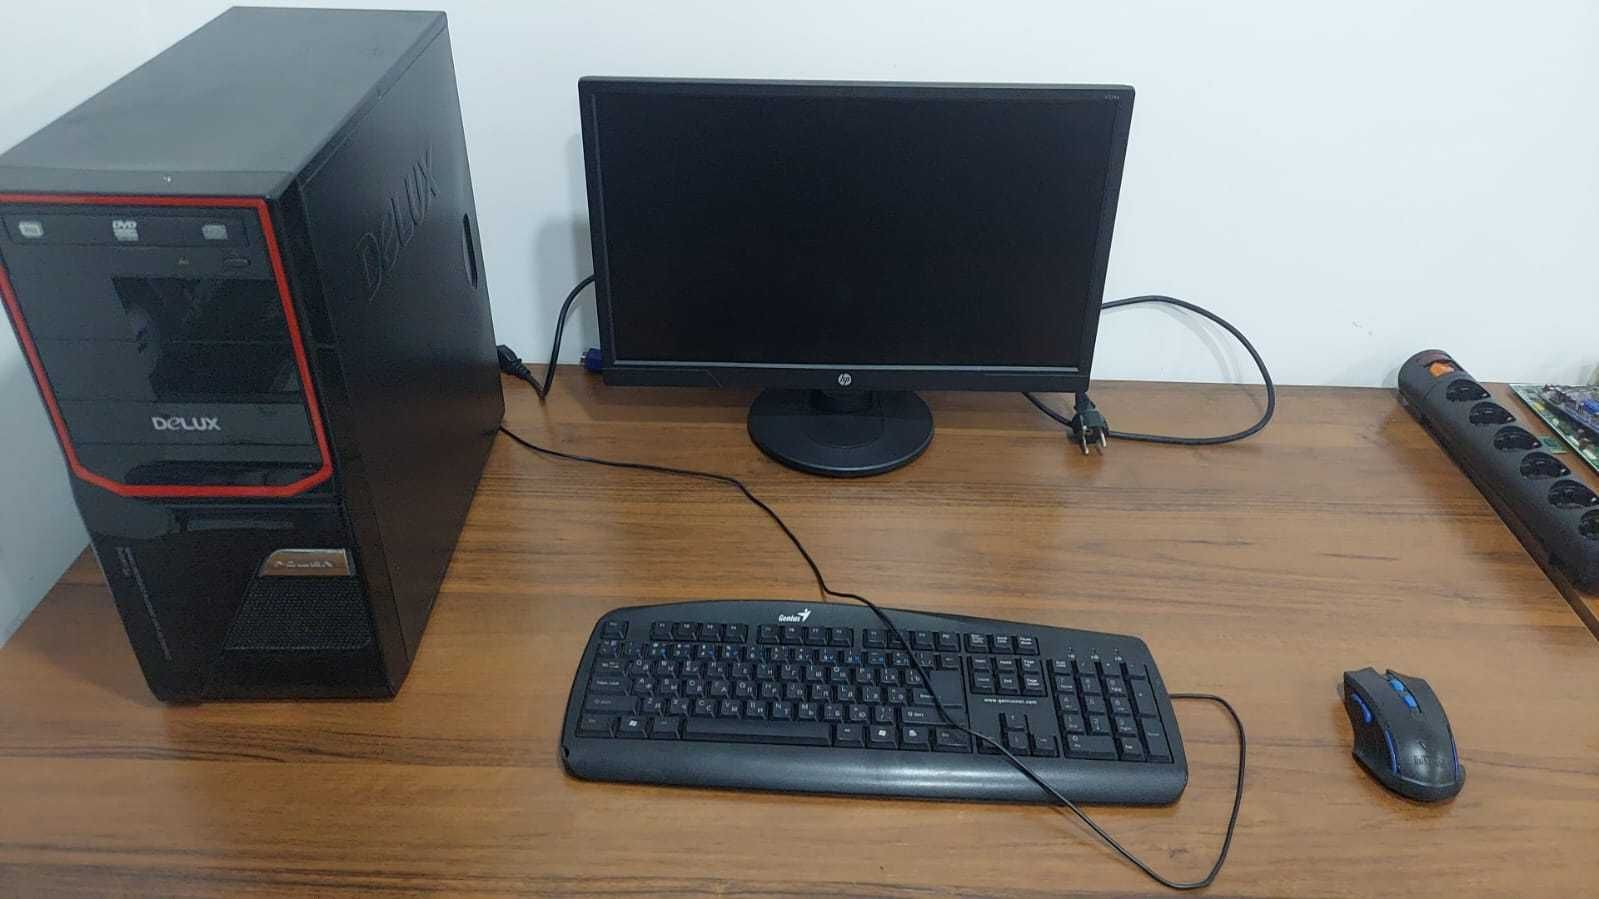 Продам компьютеры в отличном состоянии с монитором 19",для дома, офиса